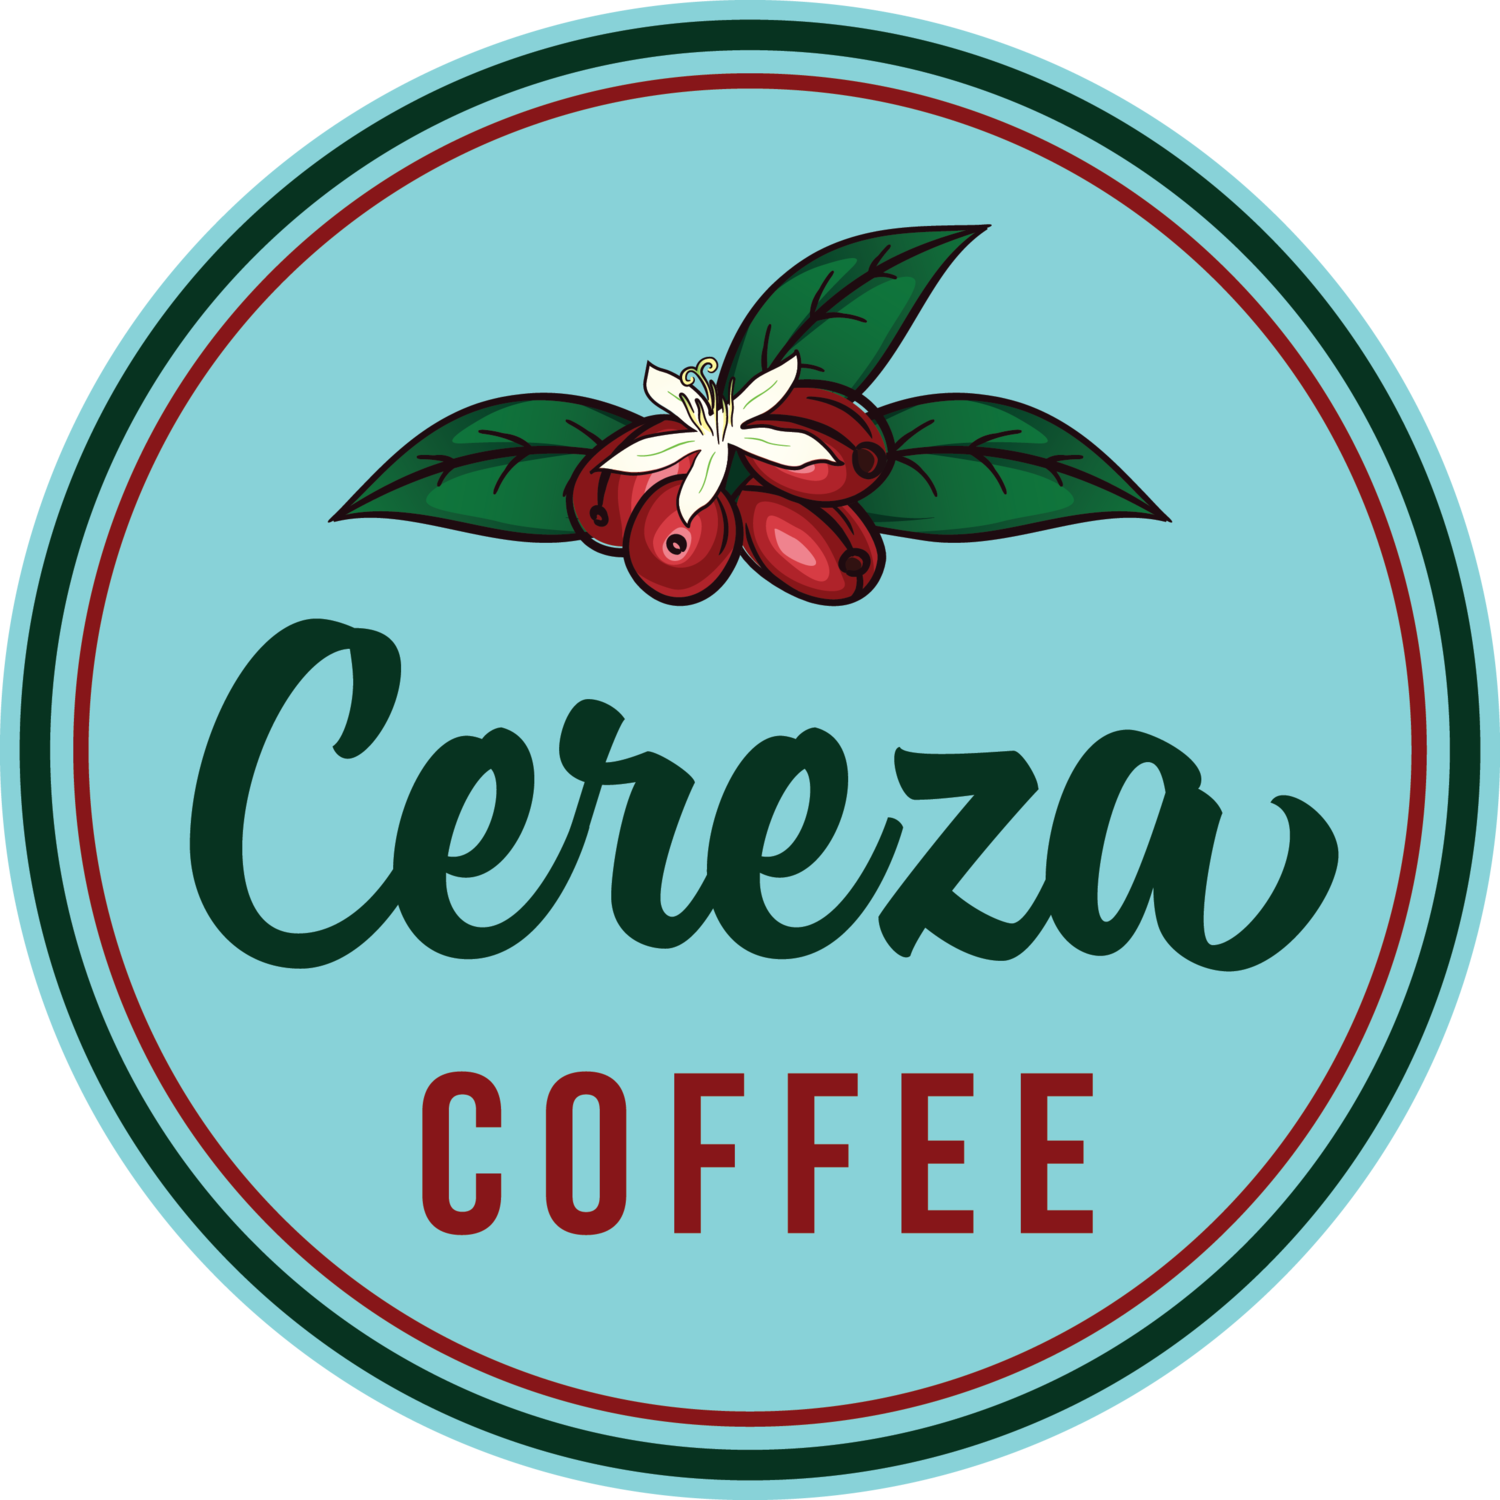 Cereza Coffee